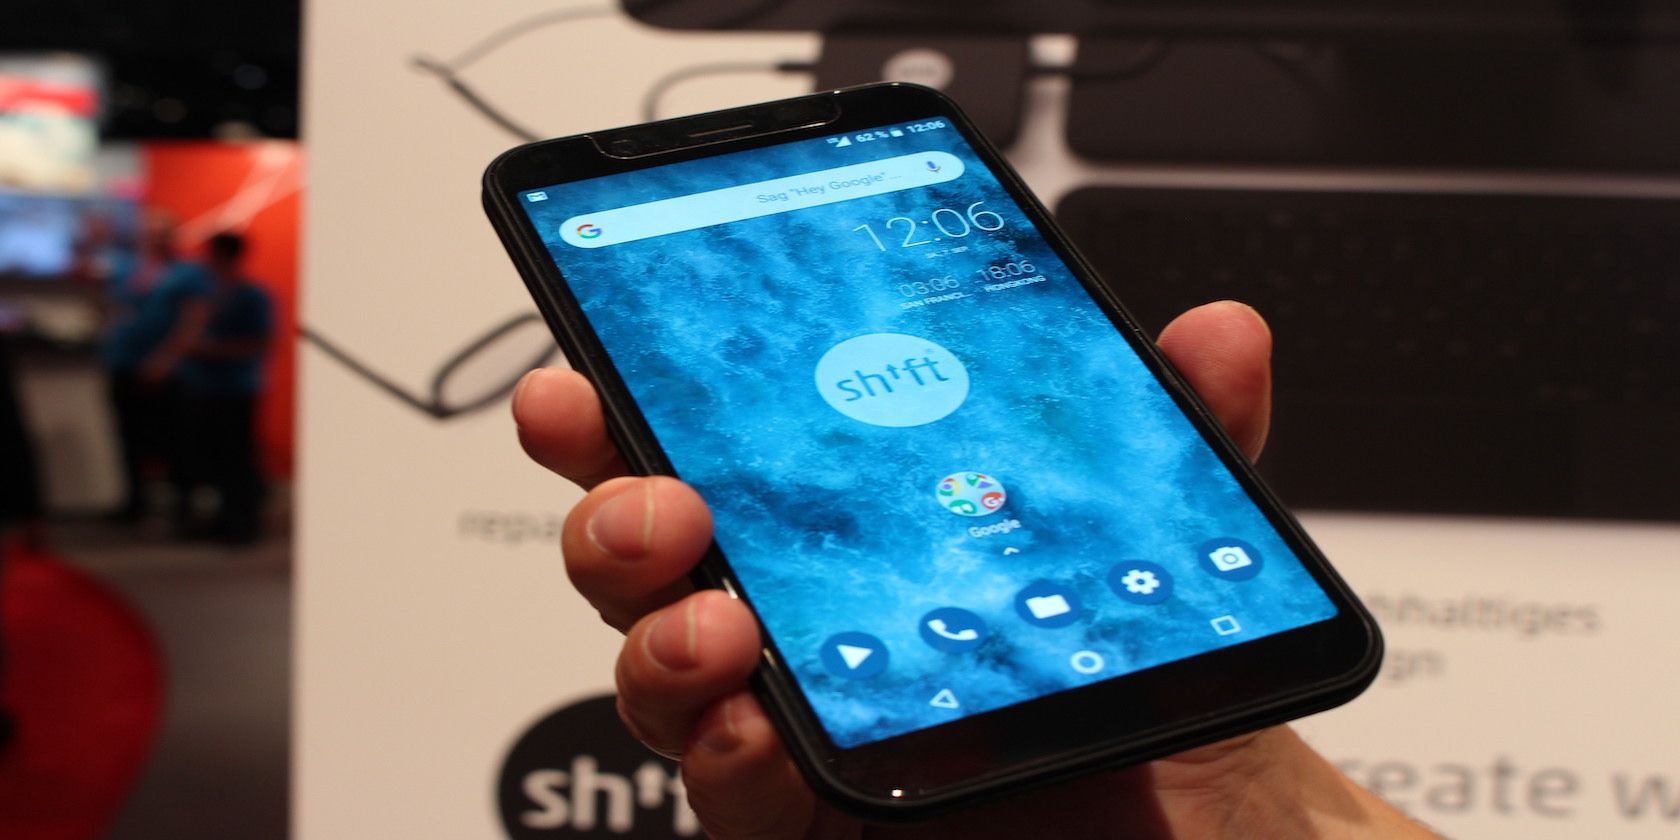 SHIFT Shiftphone at IFA 2019